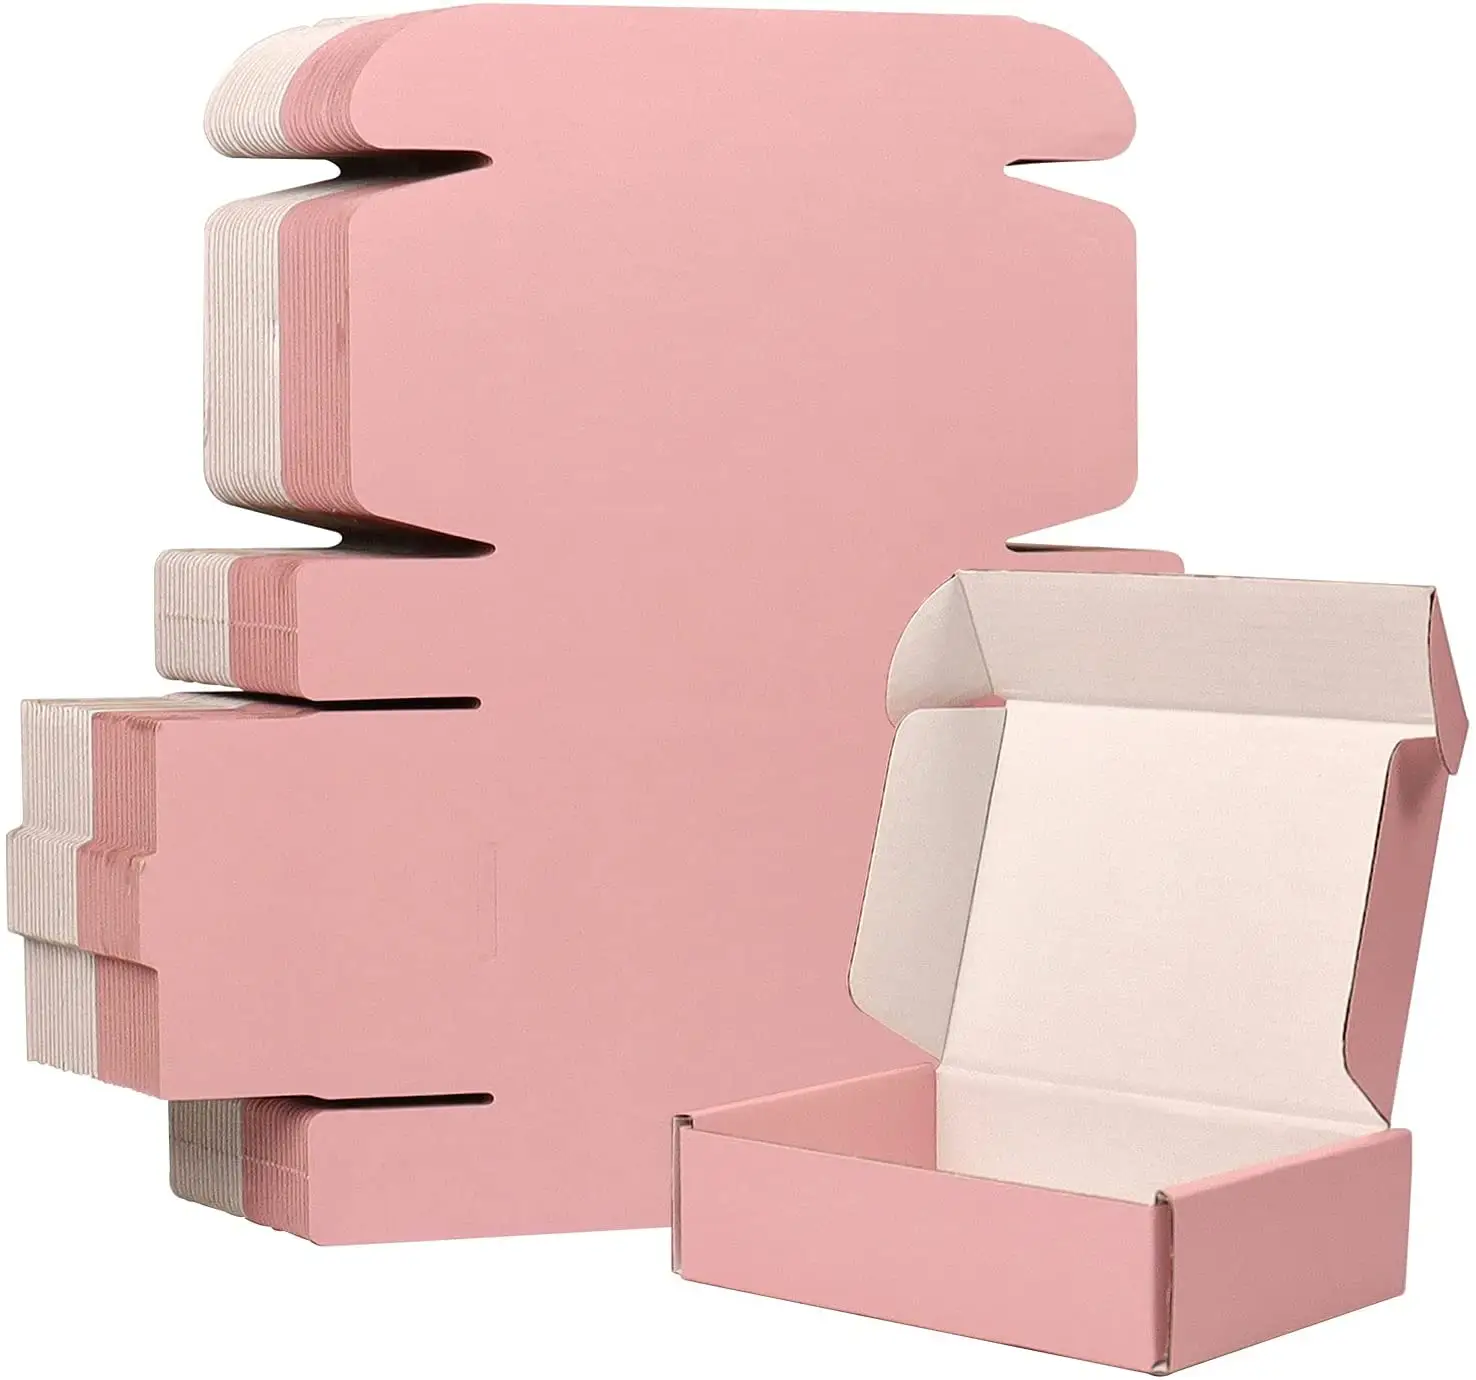 Özel Logo pembe kargo kutuları küçük işletmeler için küçük oluklu posta karton kutular ambalaj hediye kutuları